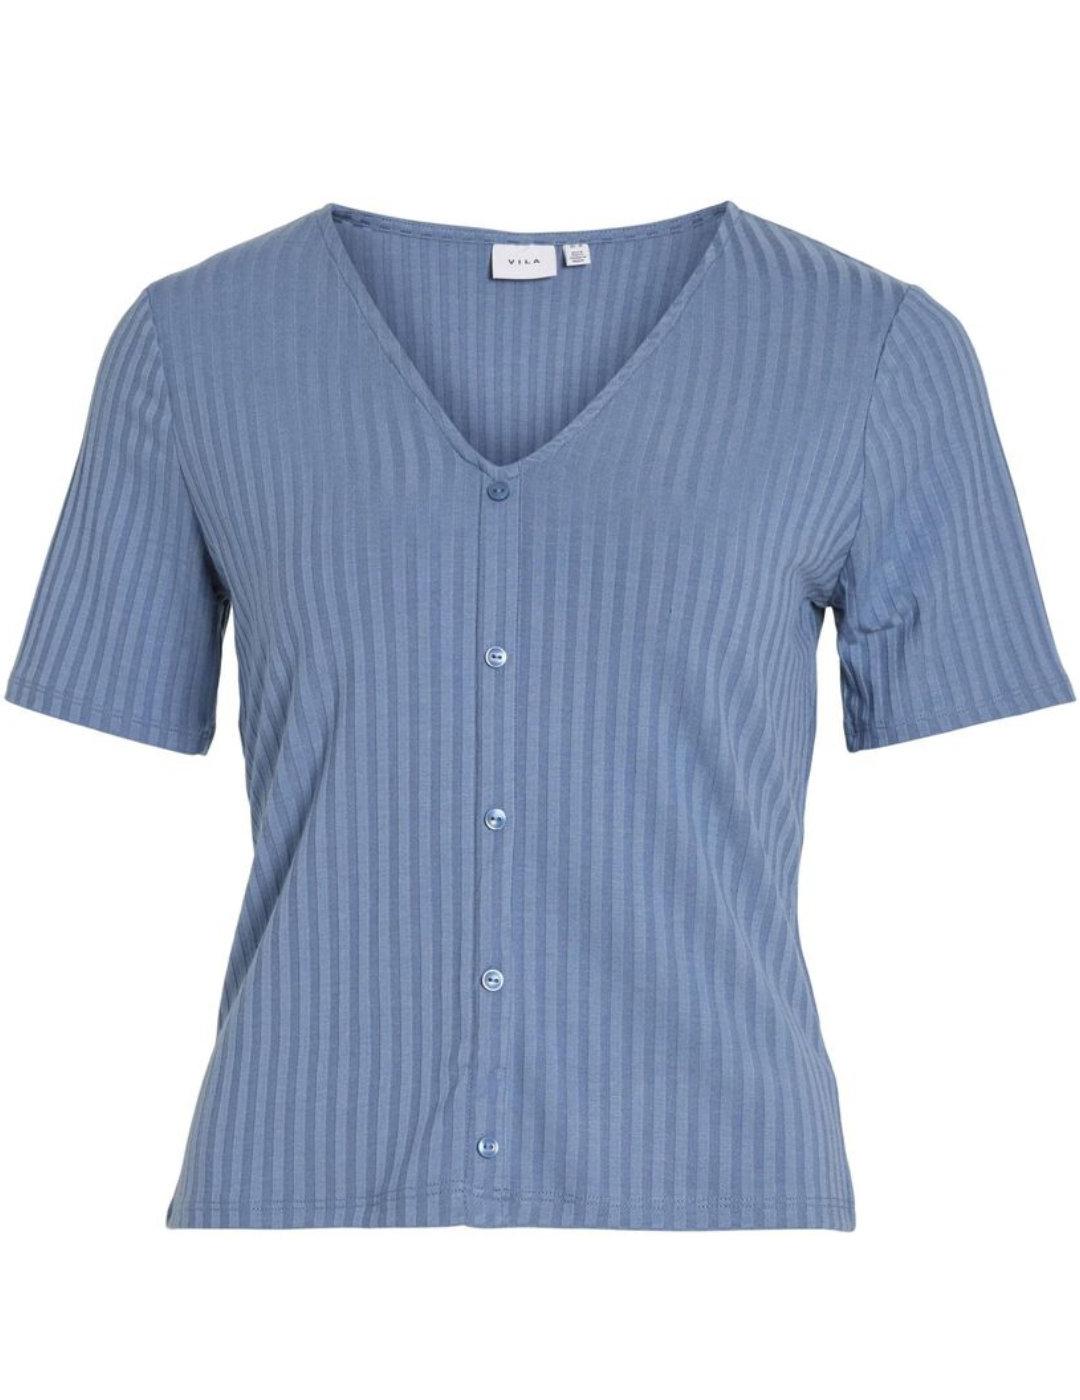 Camiseta Vila Ribini azul cuello V botones manga corta mujer